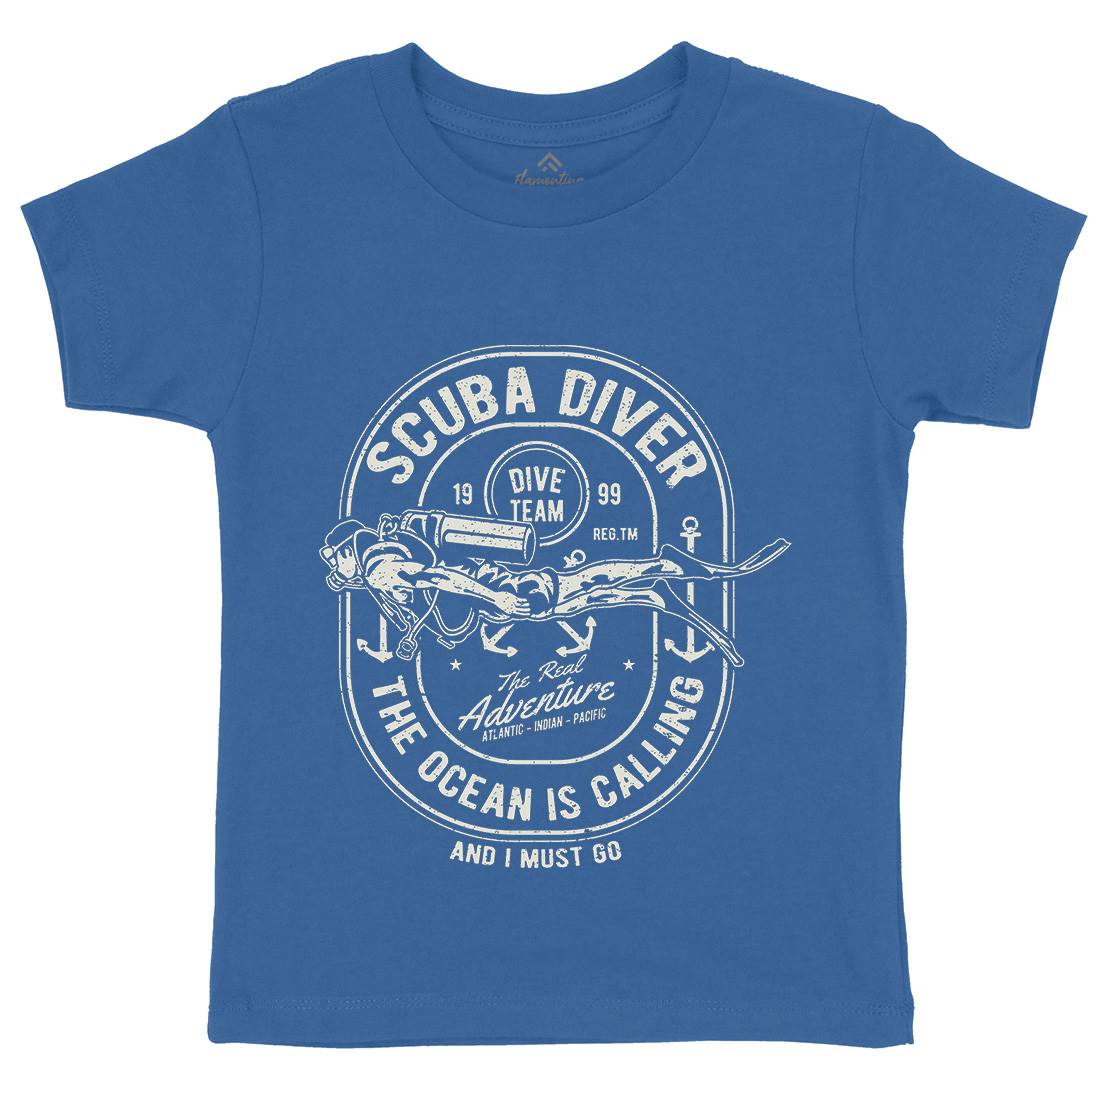 Scuba Diver Kids Organic Crew Neck T-Shirt Navy A138